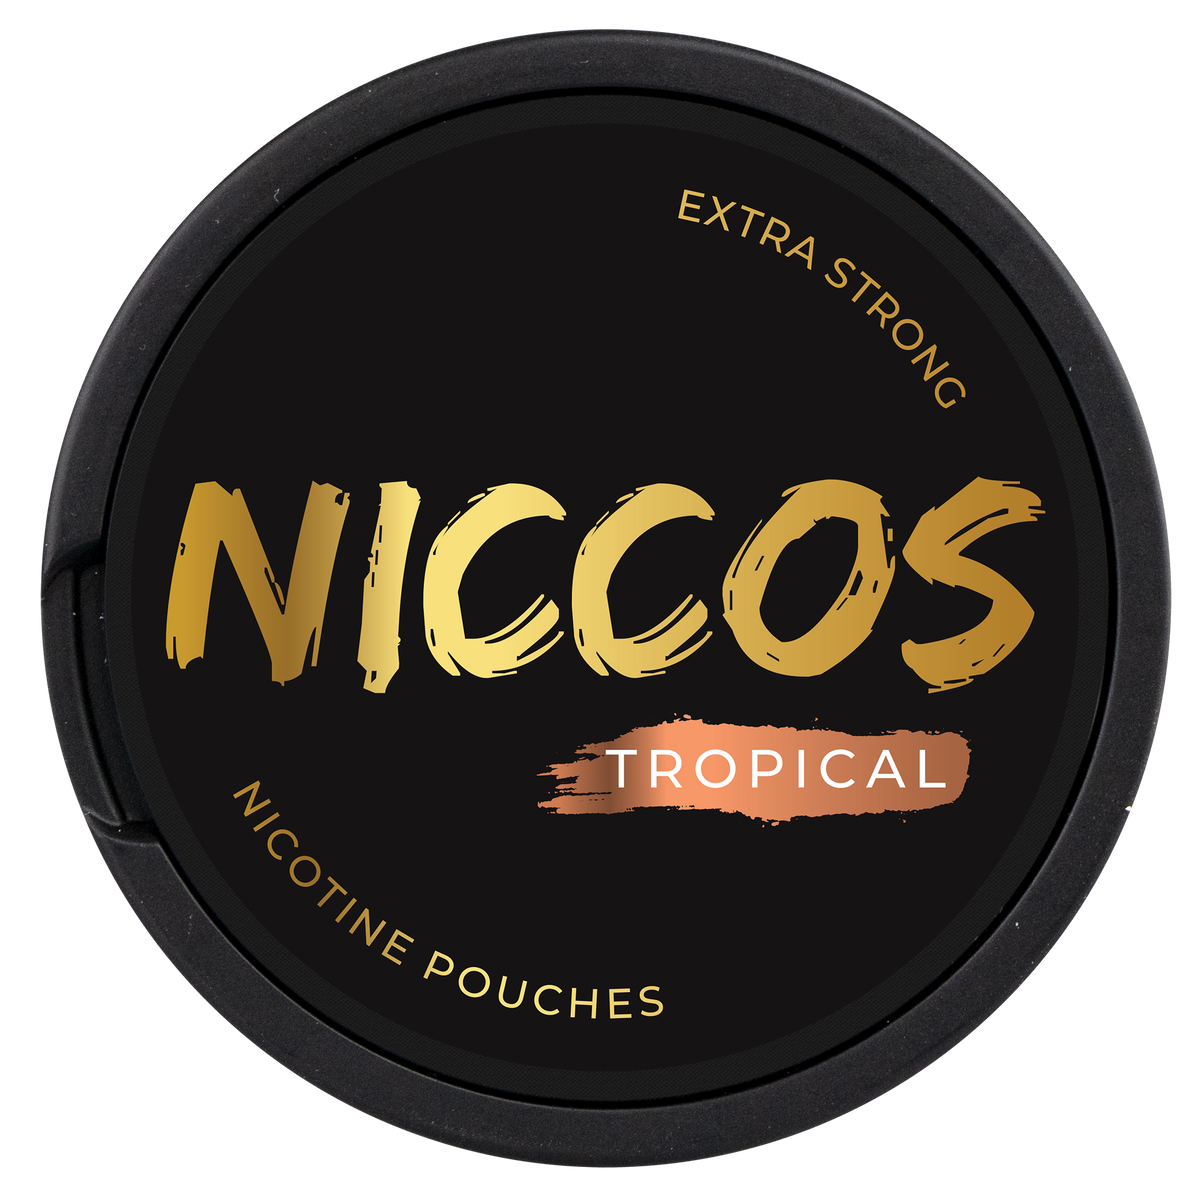 NICCOS Tropical